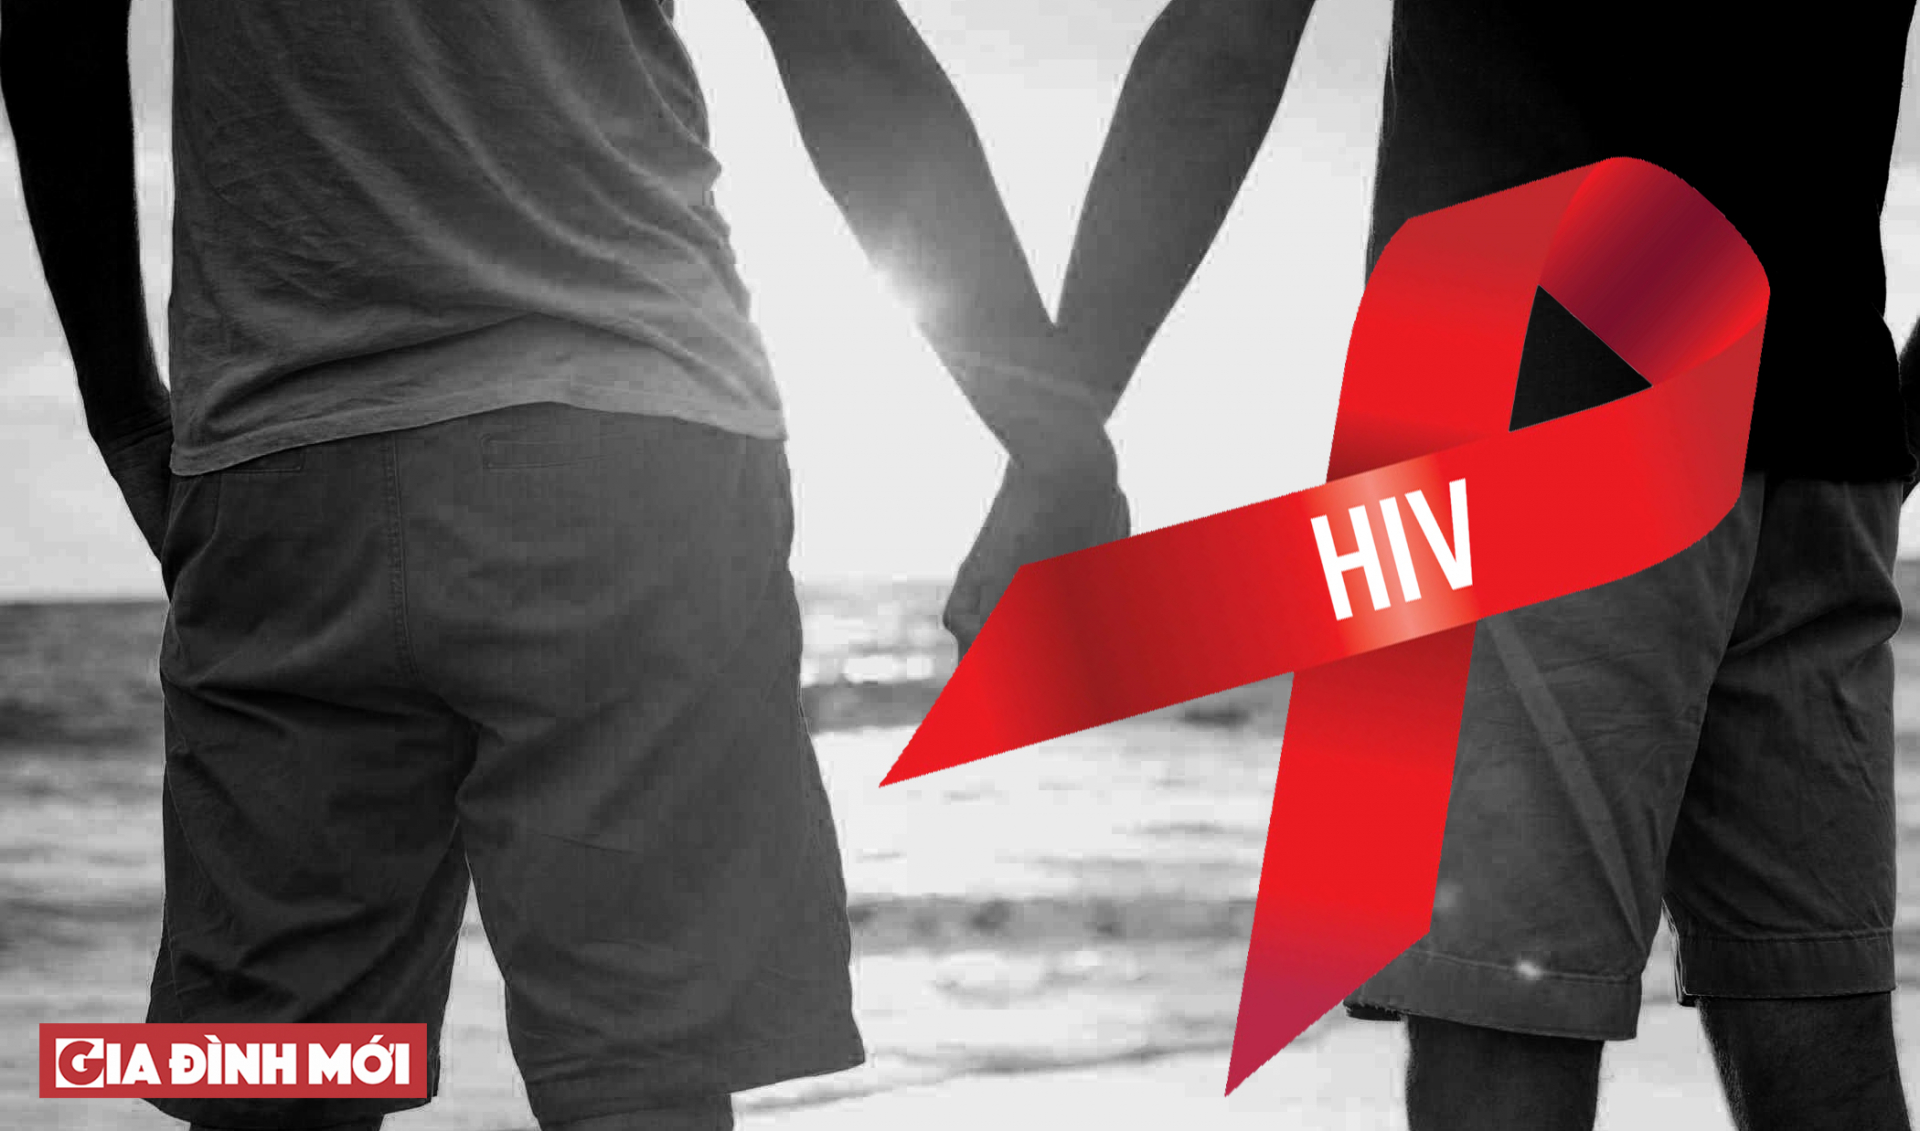 Tỷ lệ nhiễm HIV trong nhóm nam quan hệ tình dục đồng giới ngày càng tăng